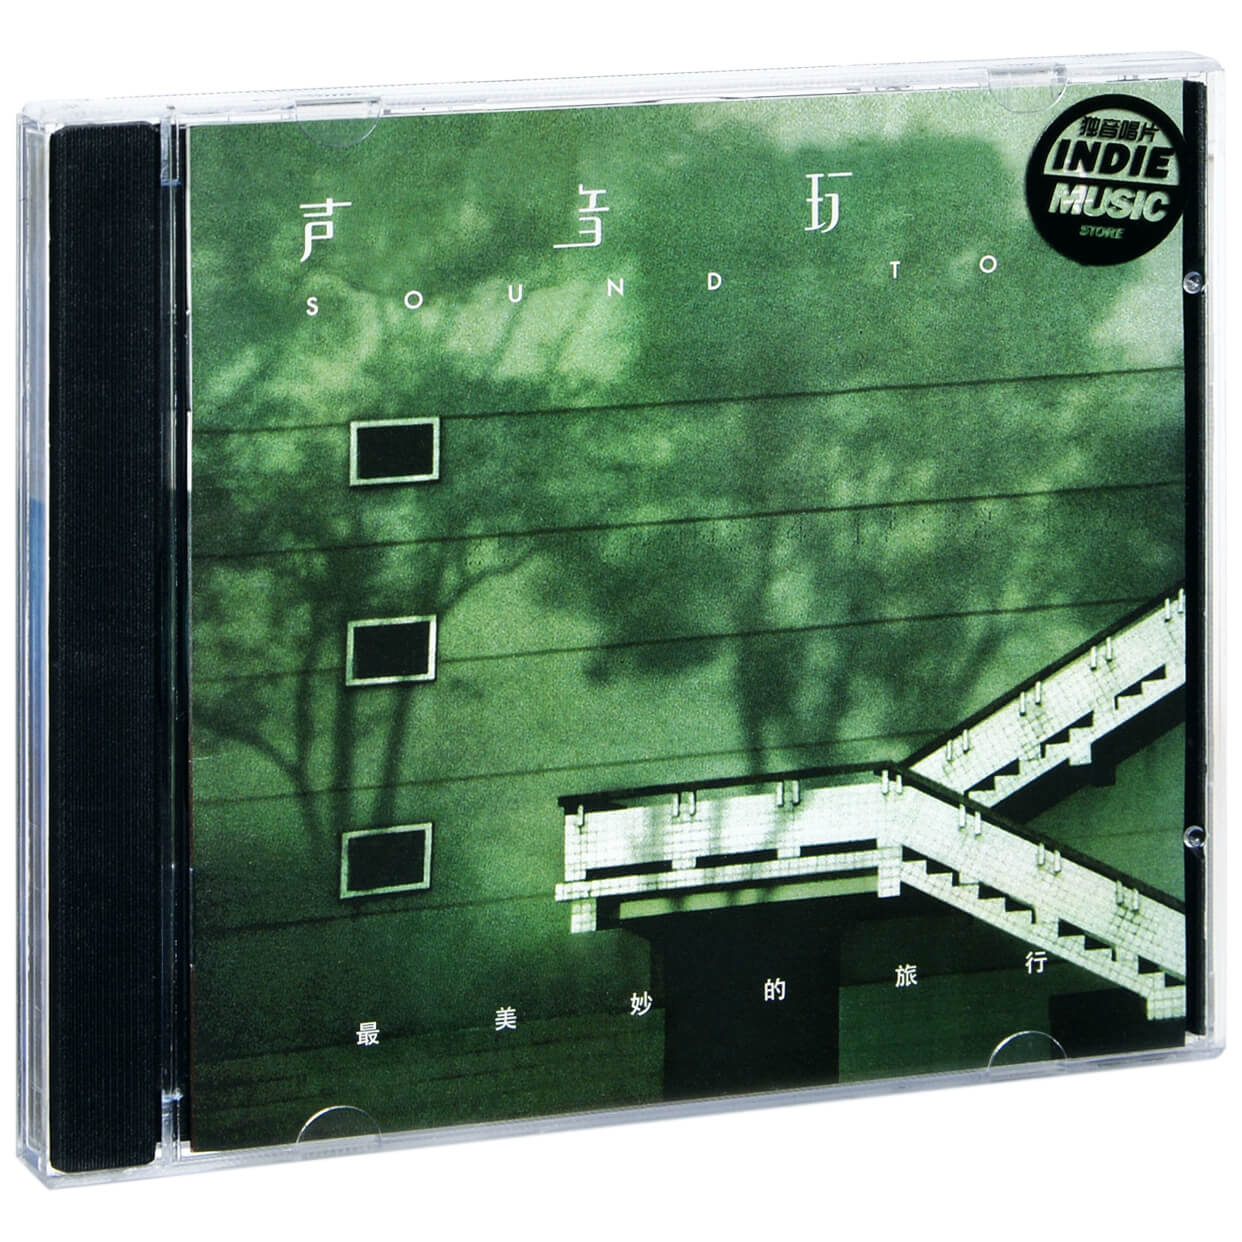 正版声音玩具乐队 最美妙的旅行 2003专辑唱片CD碟片